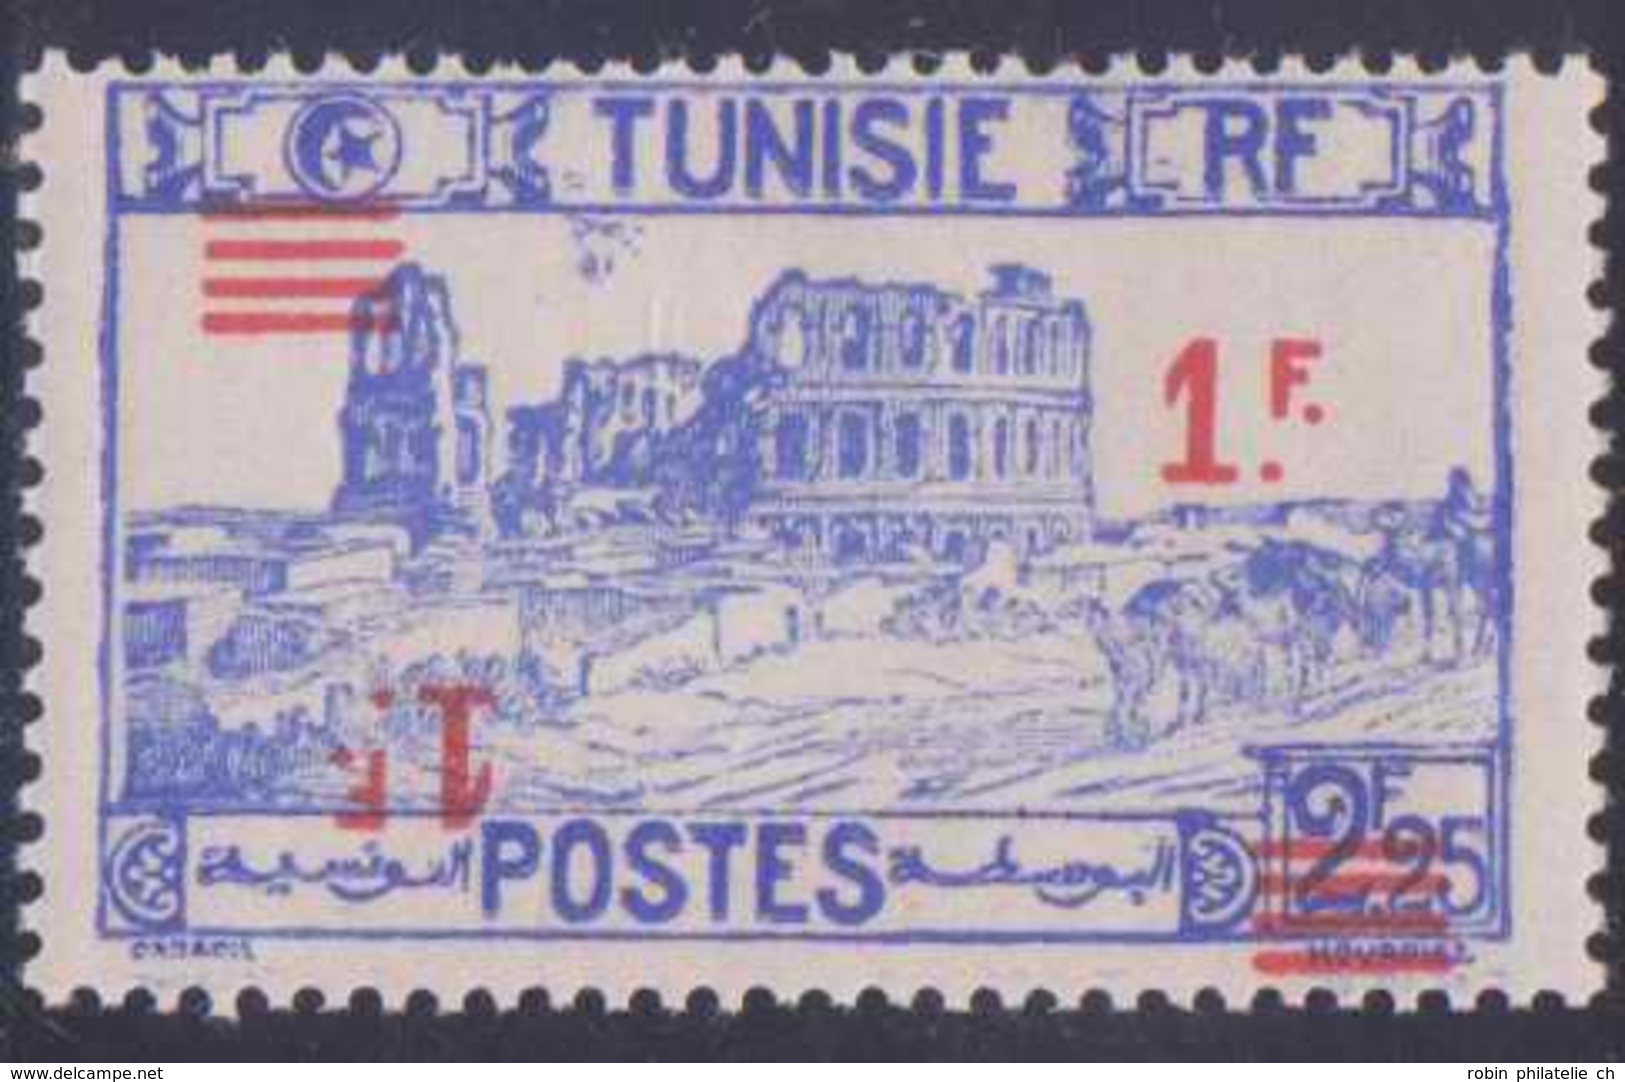 Tunisie Postes N° 226 1f Sur 2f25 Outremer Double Surcharge Dont Une Renversée Qualité: ** Cote: 0 € - Ongebruikt